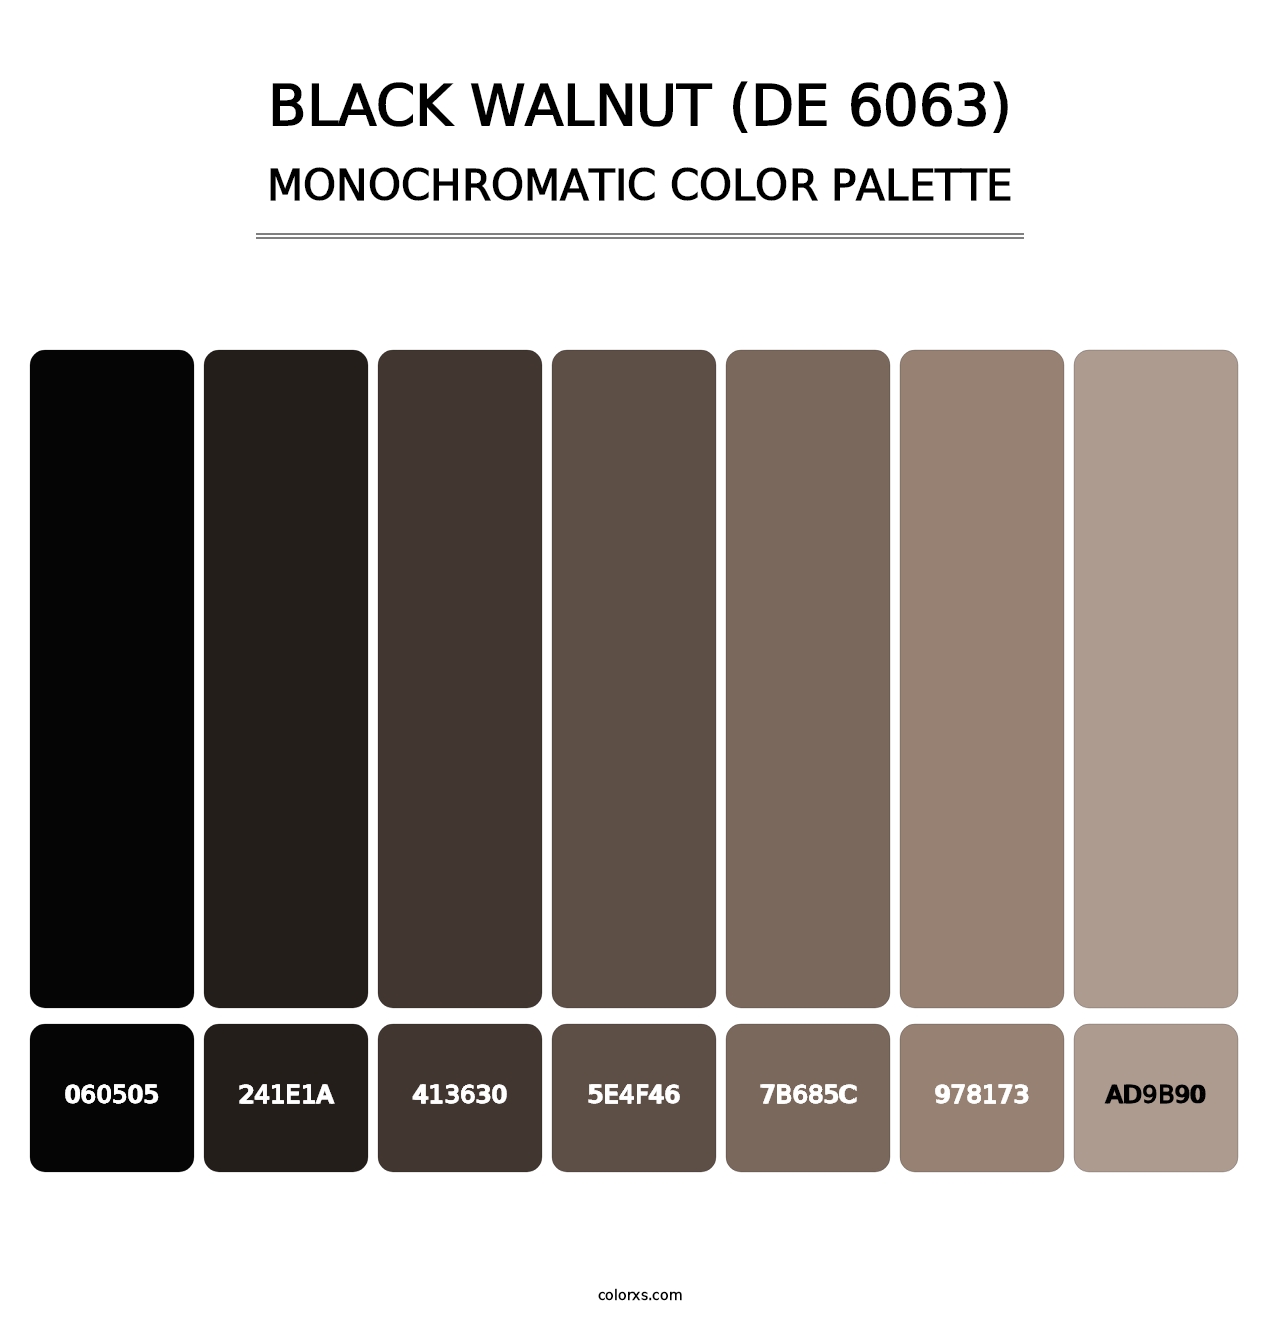 Black Walnut (DE 6063) - Monochromatic Color Palette